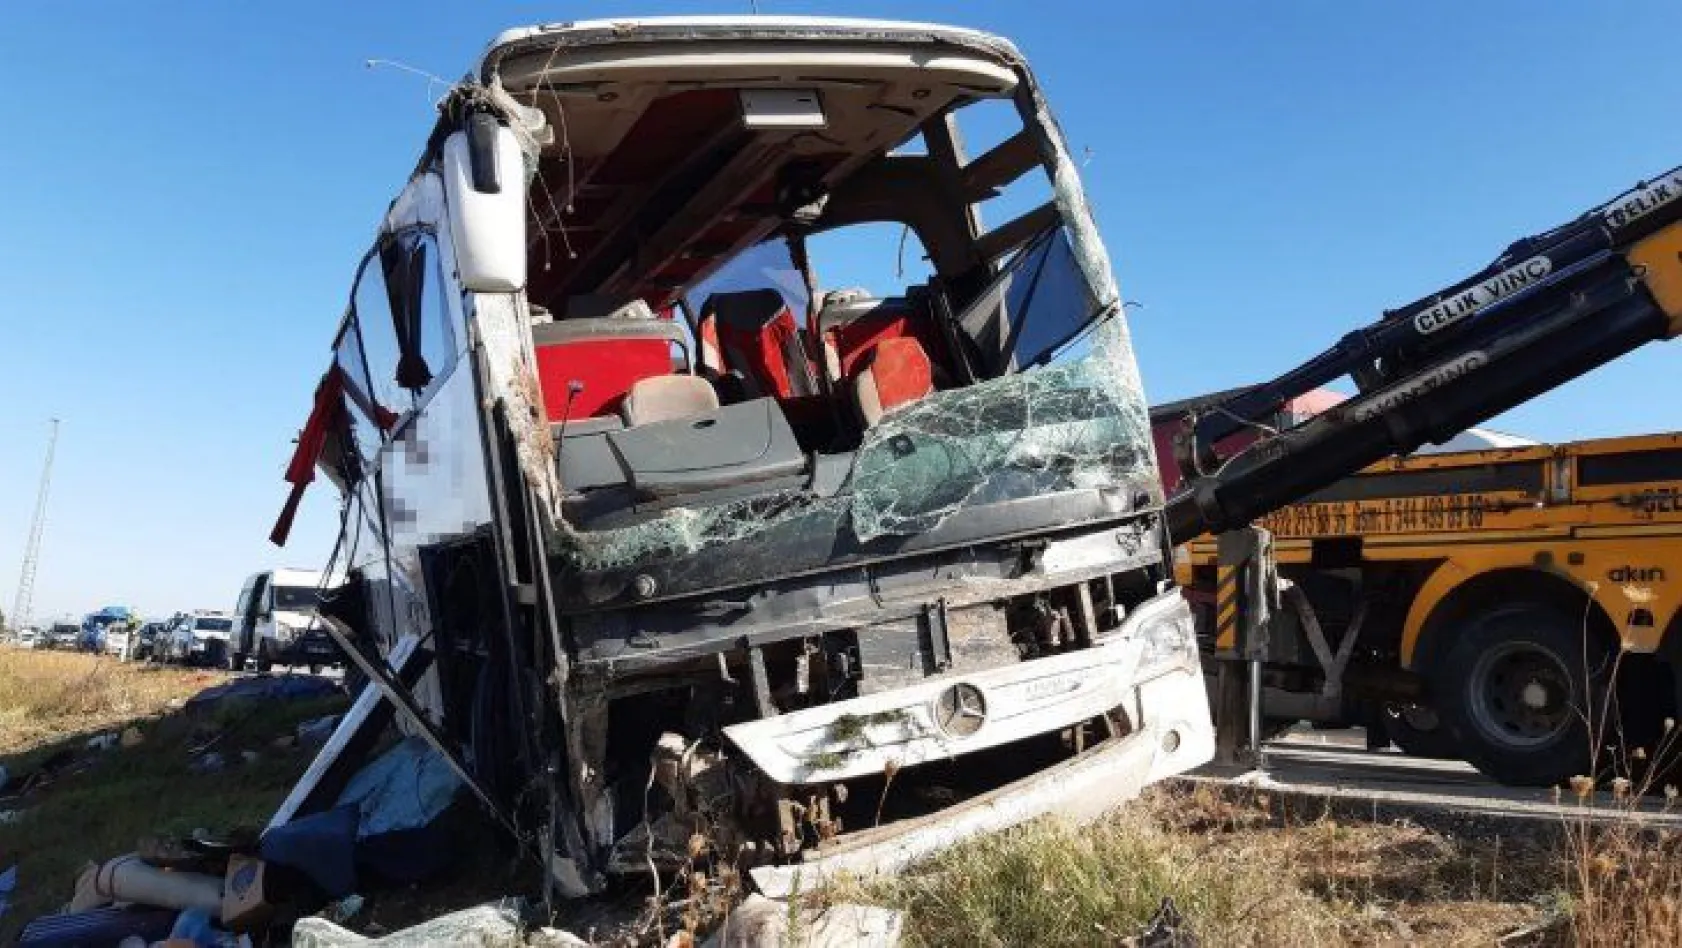 Afyonkarahisar'da yolcu otobüsü devrildi